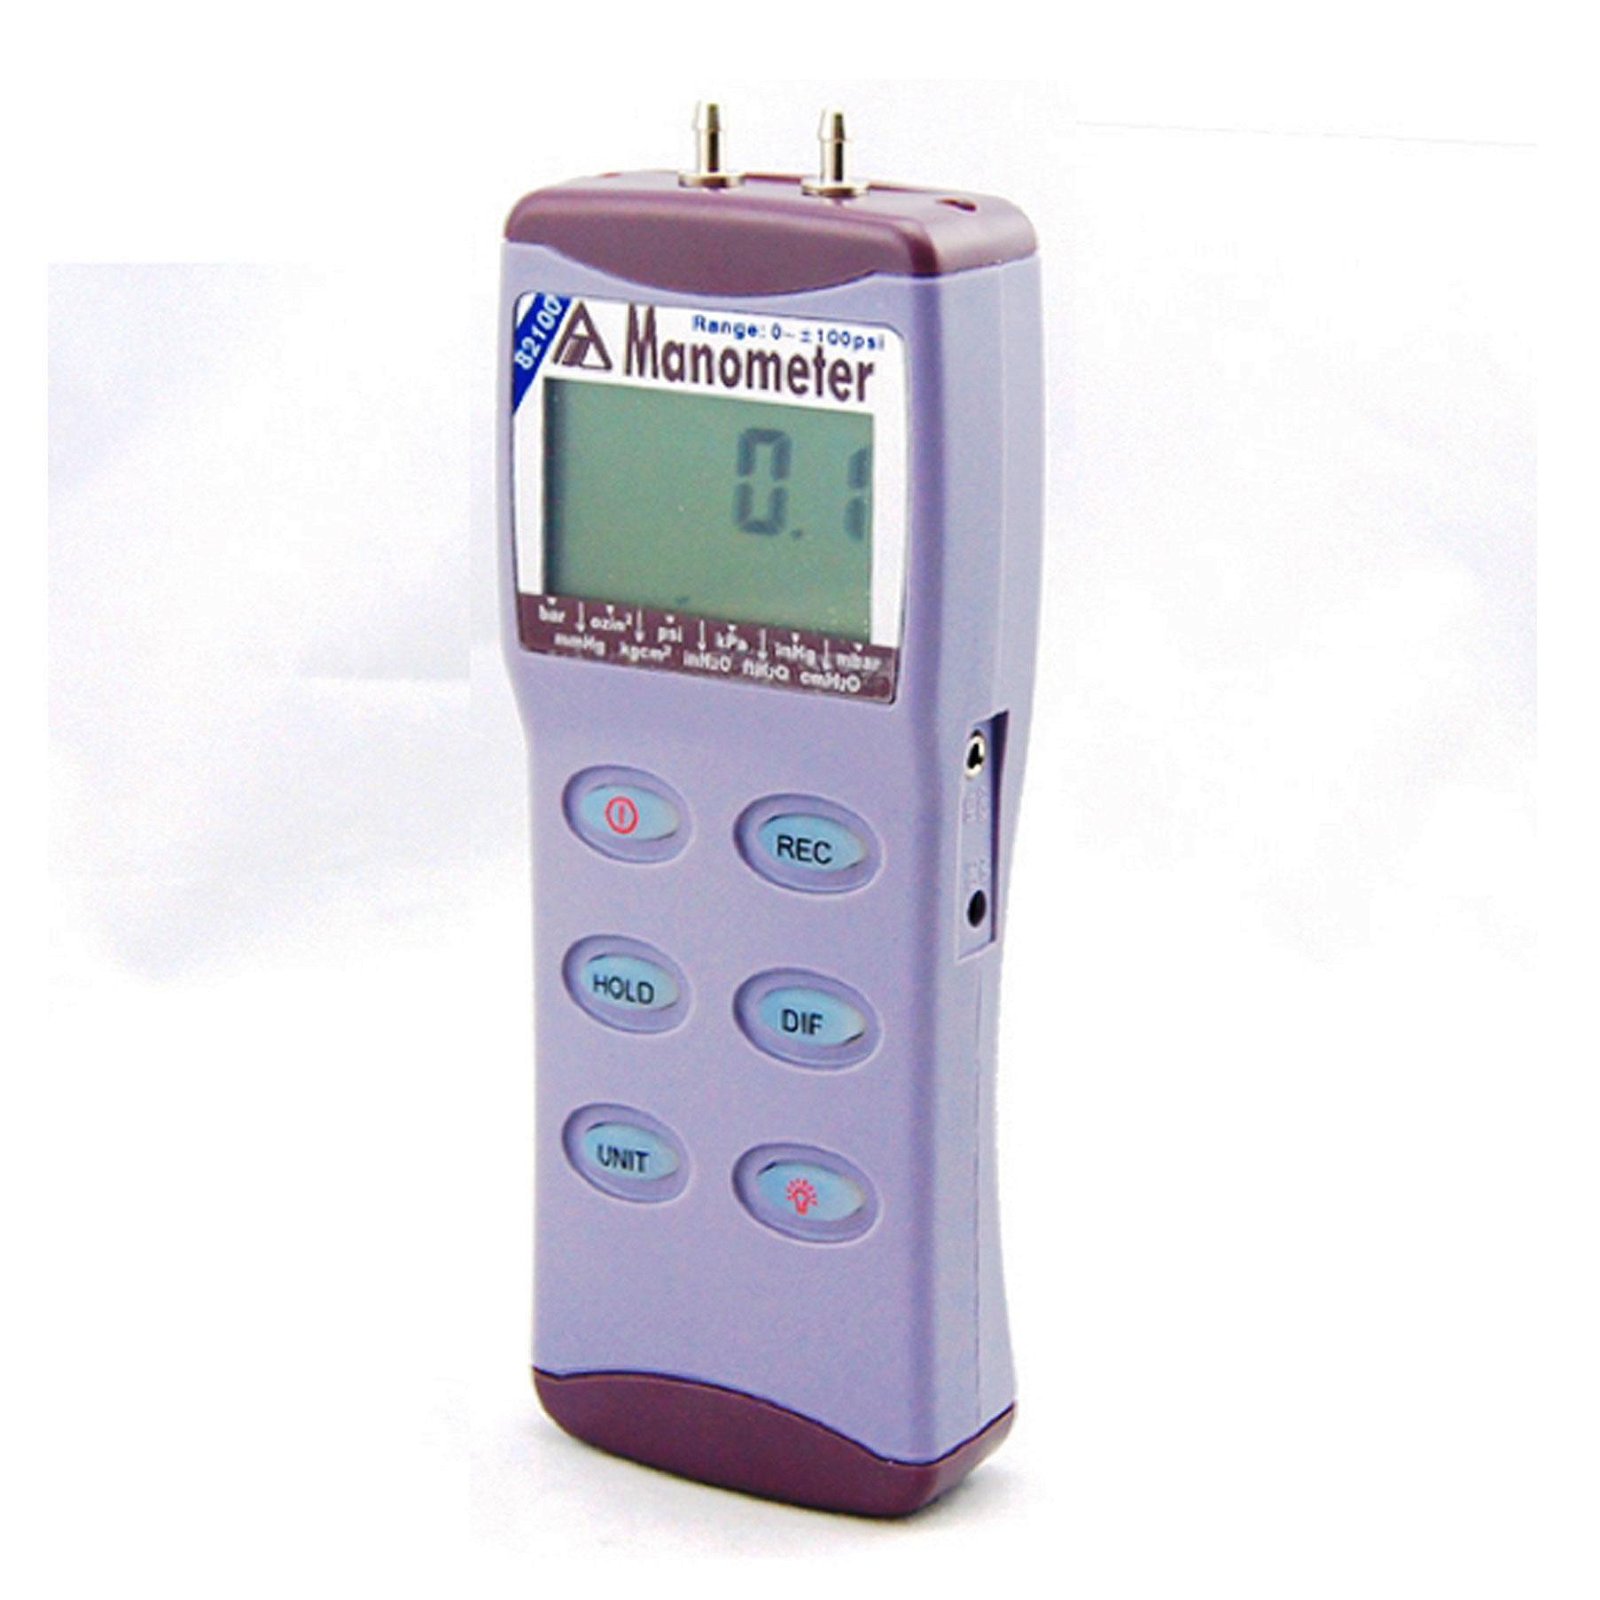 Portable AZ82100 digital gauge/differential pressure meter 100 psi Manometer